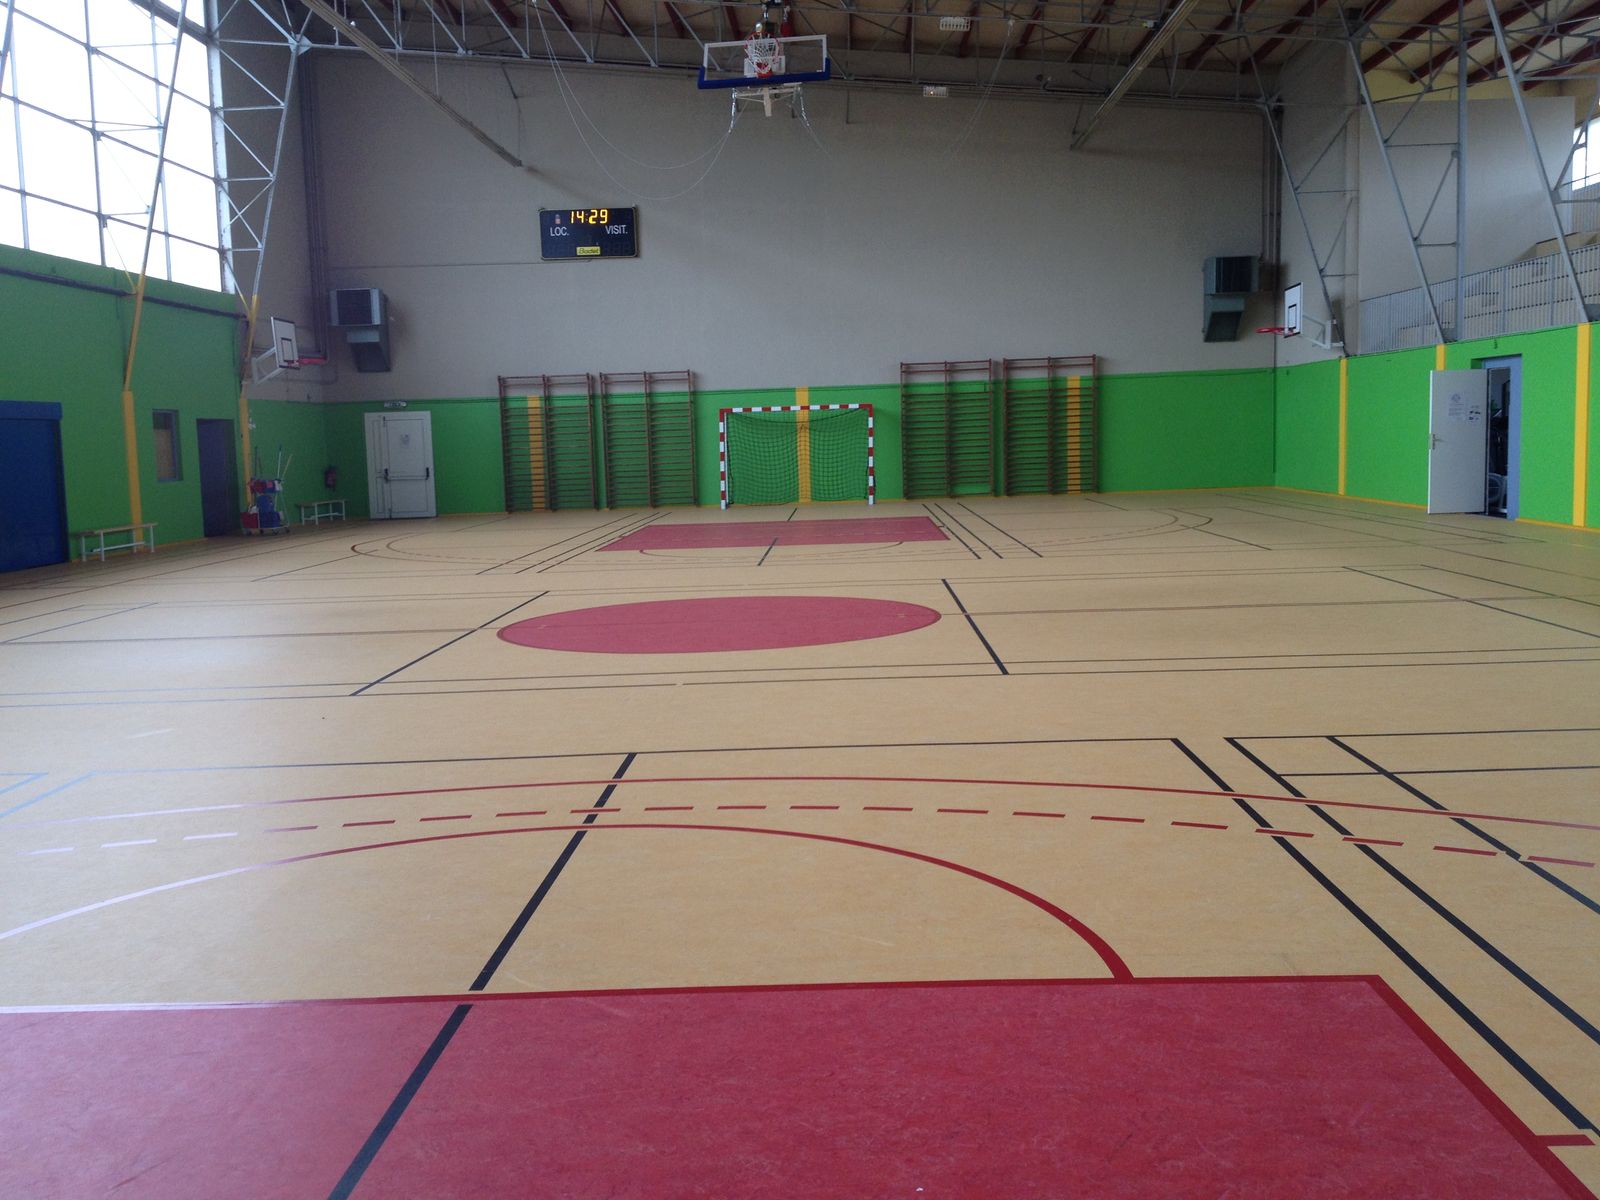 Salle de sport intérieure vide avec terrain marqué.